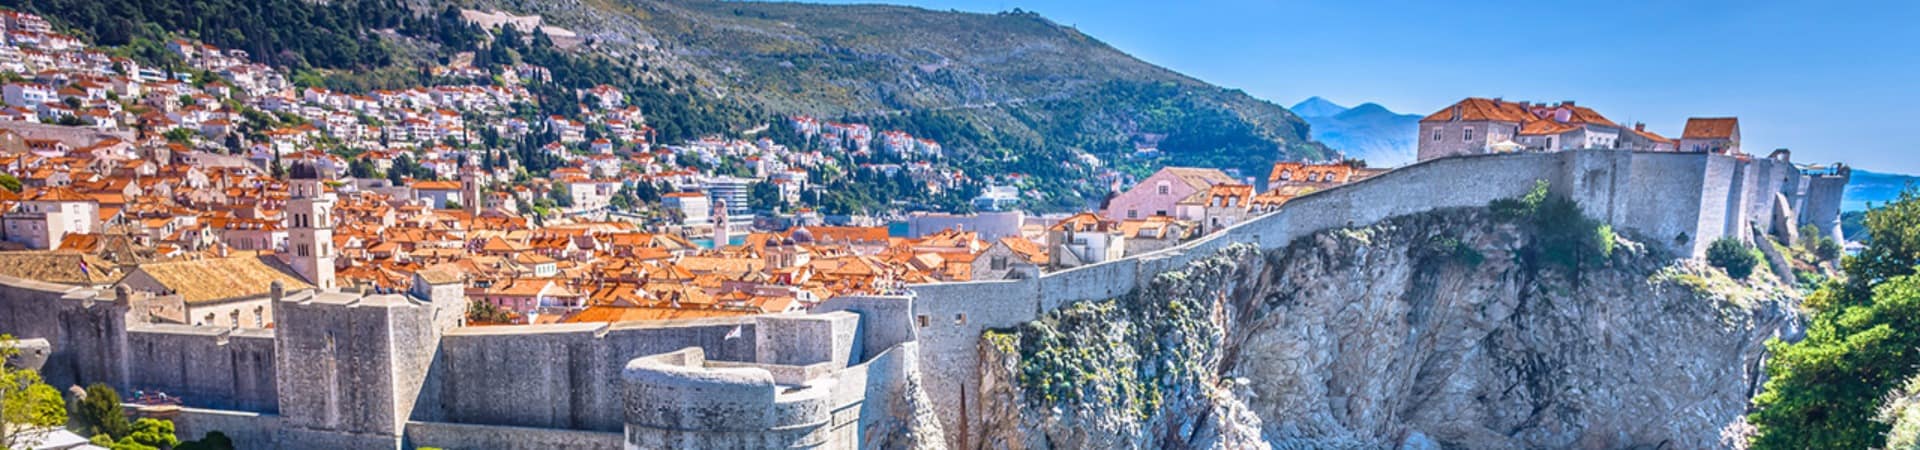 Vista aérea da cidade antiga de Dubrovnik